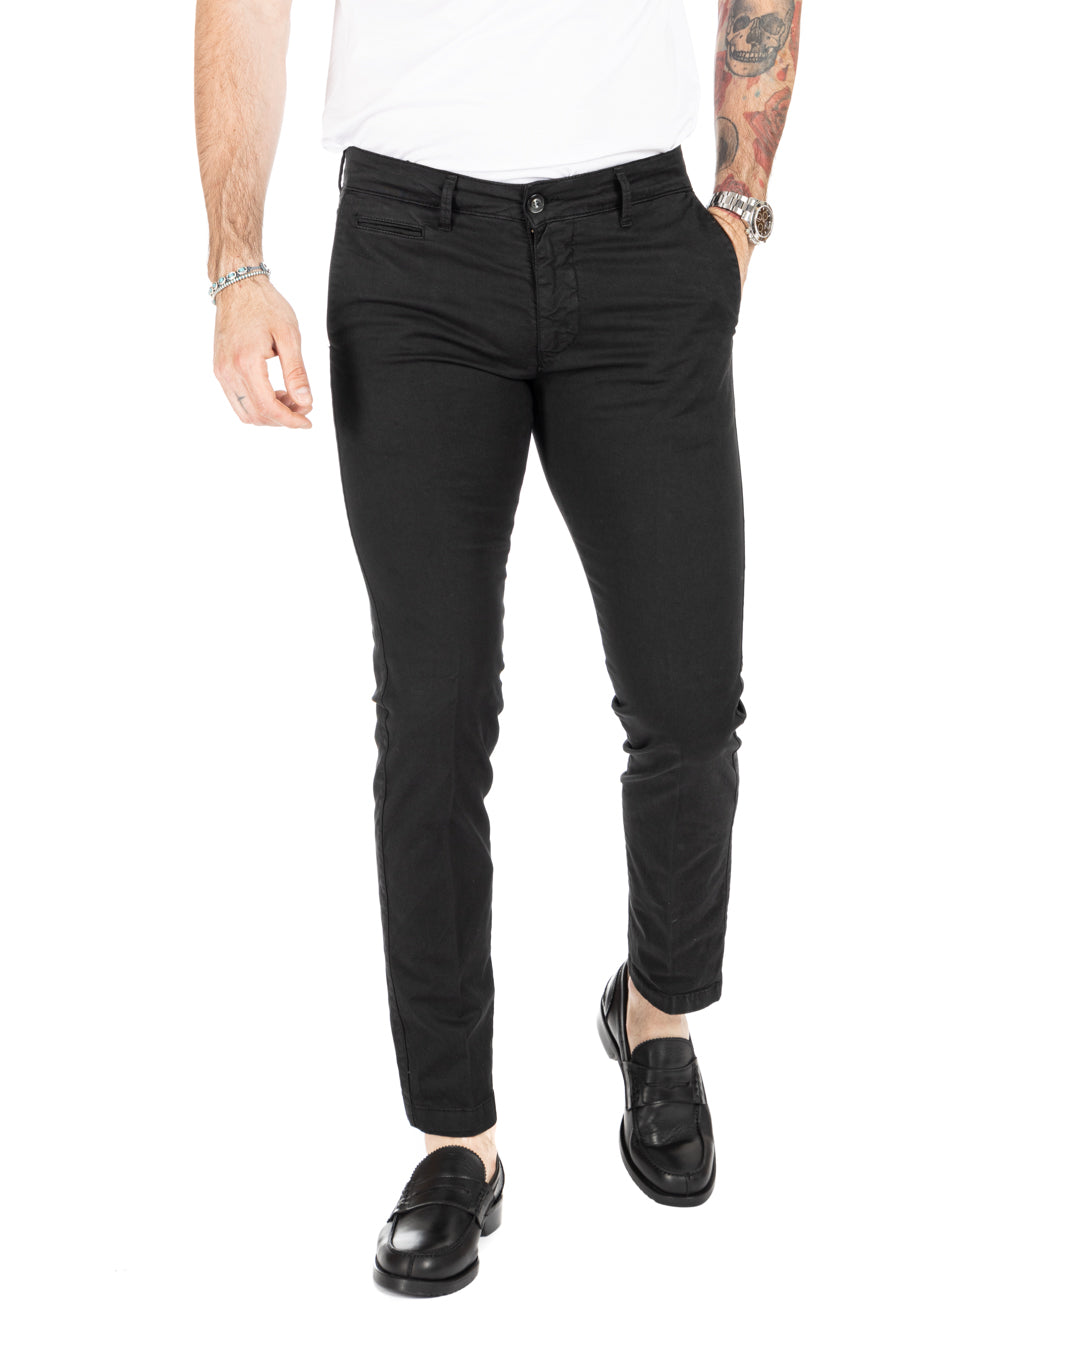 Frank - pantalon basique noir